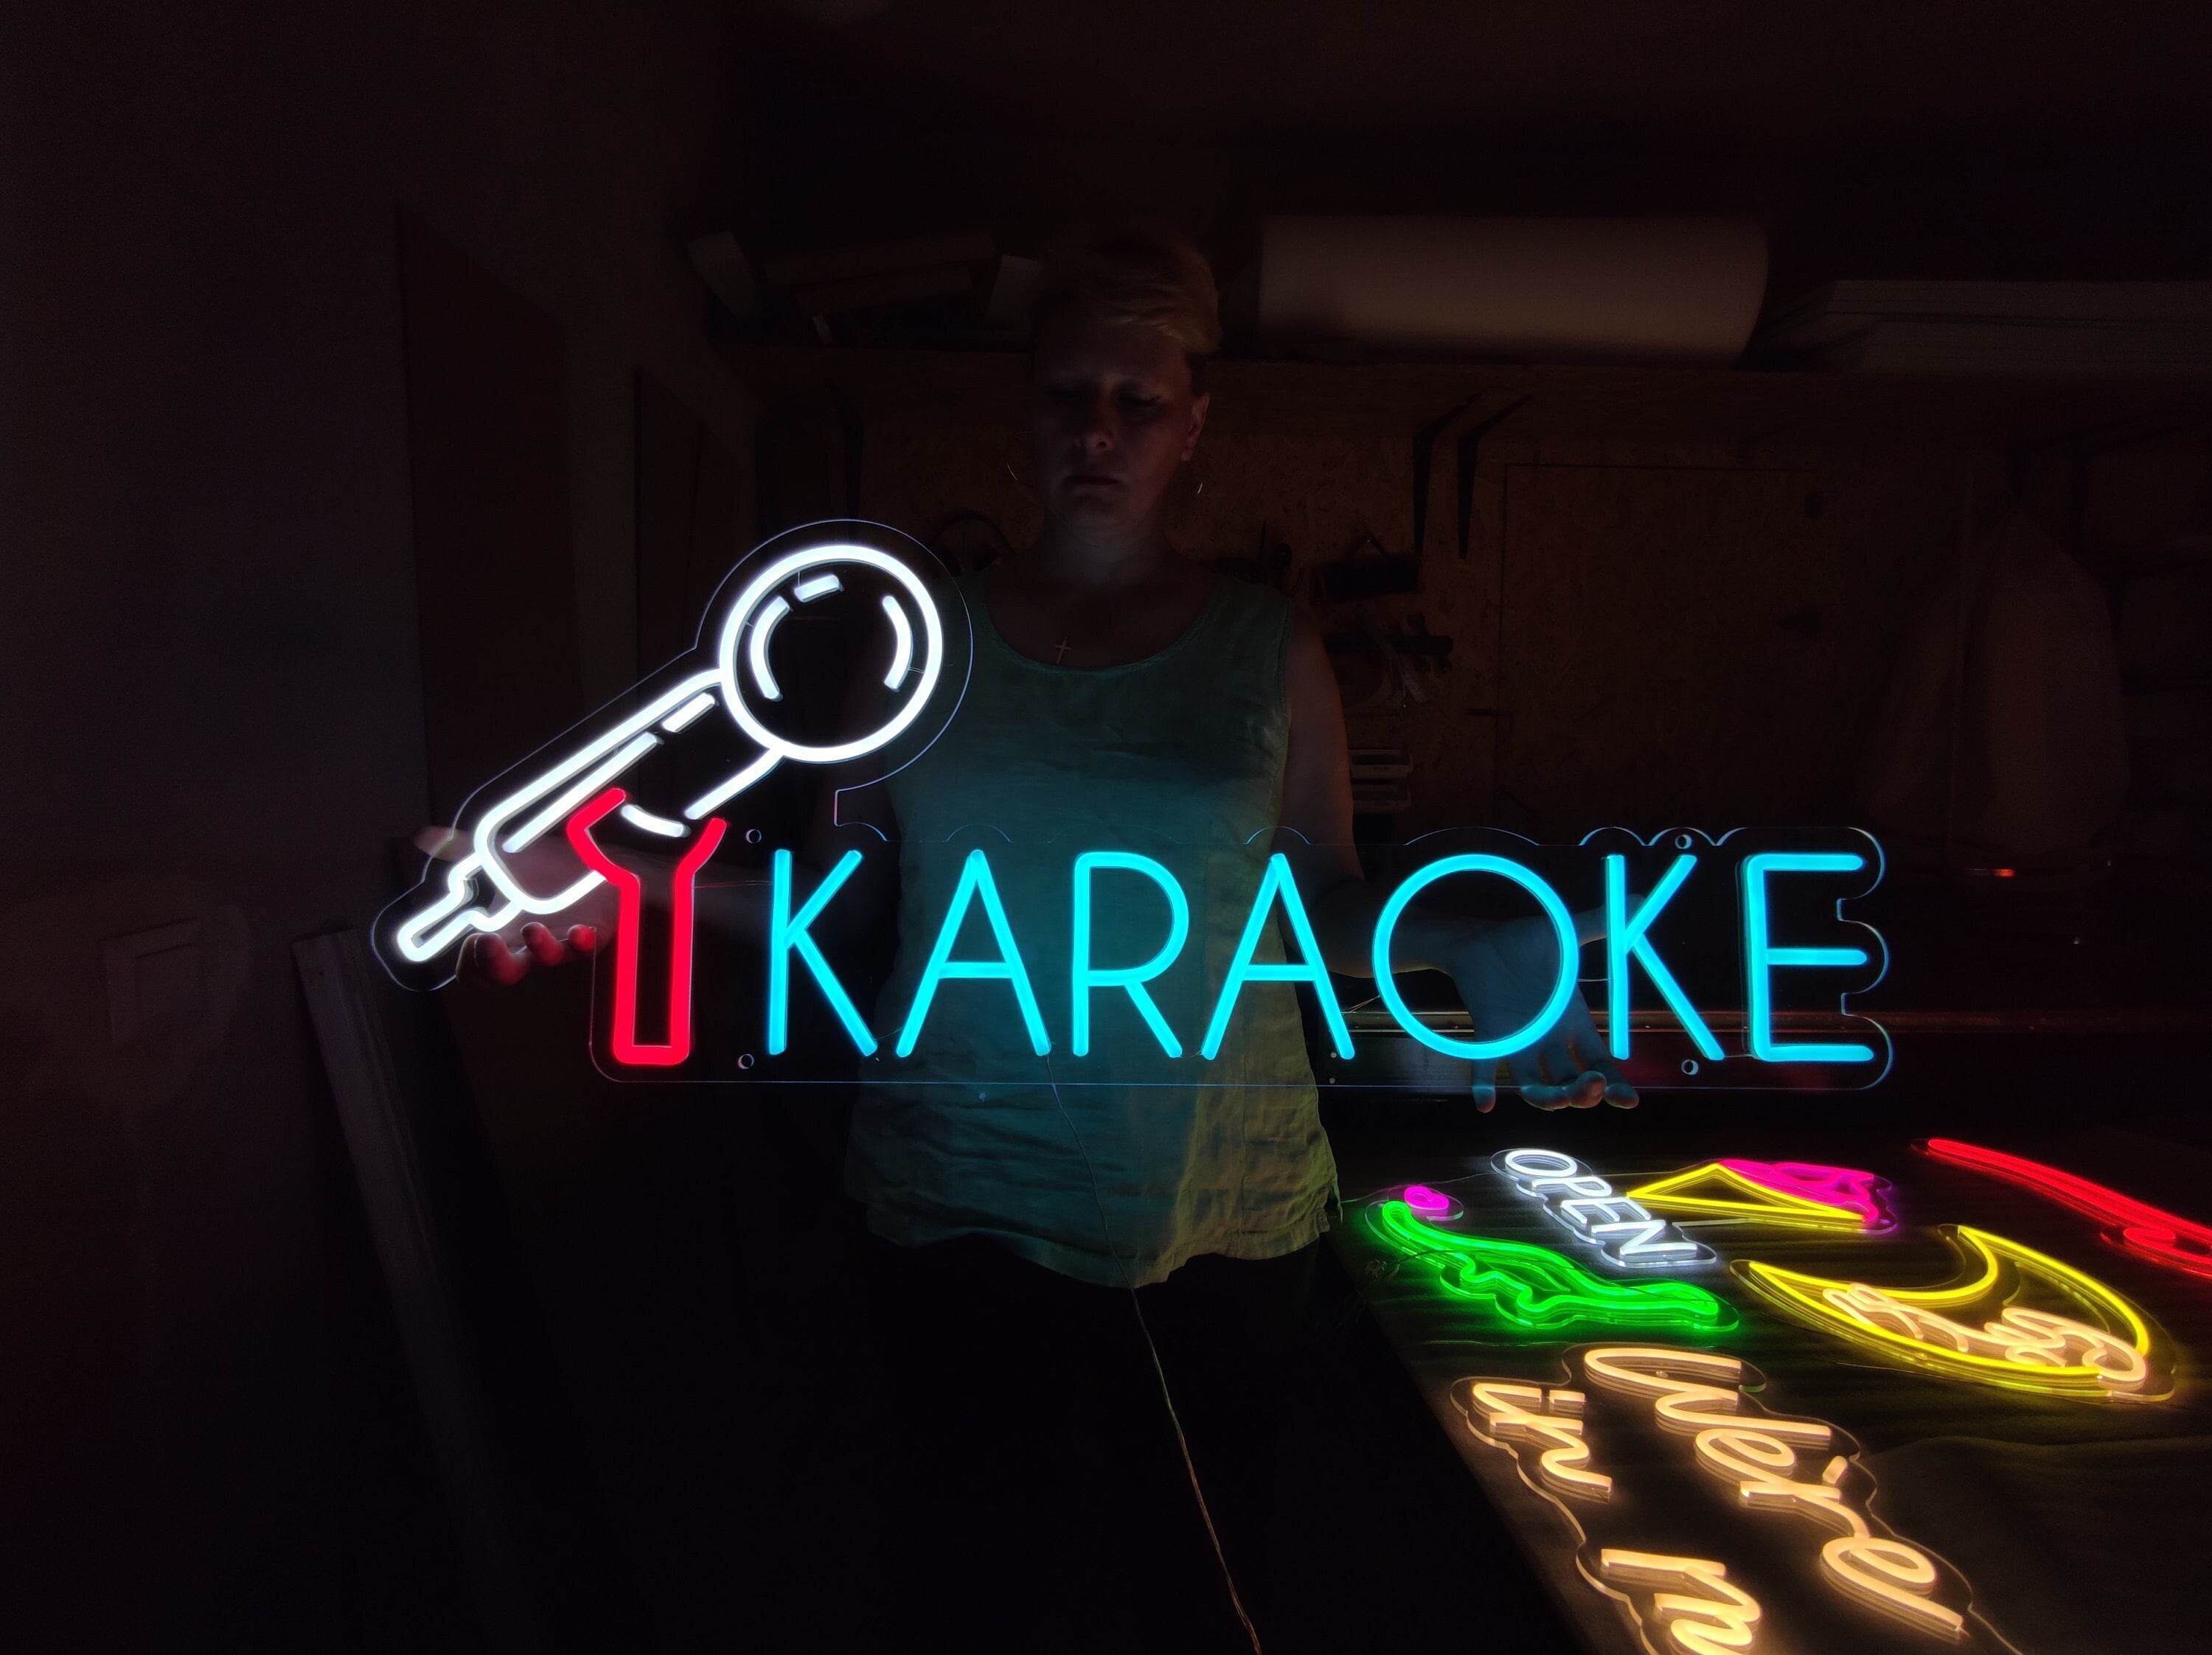 Karaoke Night Neon Signboard Microphone In Frame Talent Show